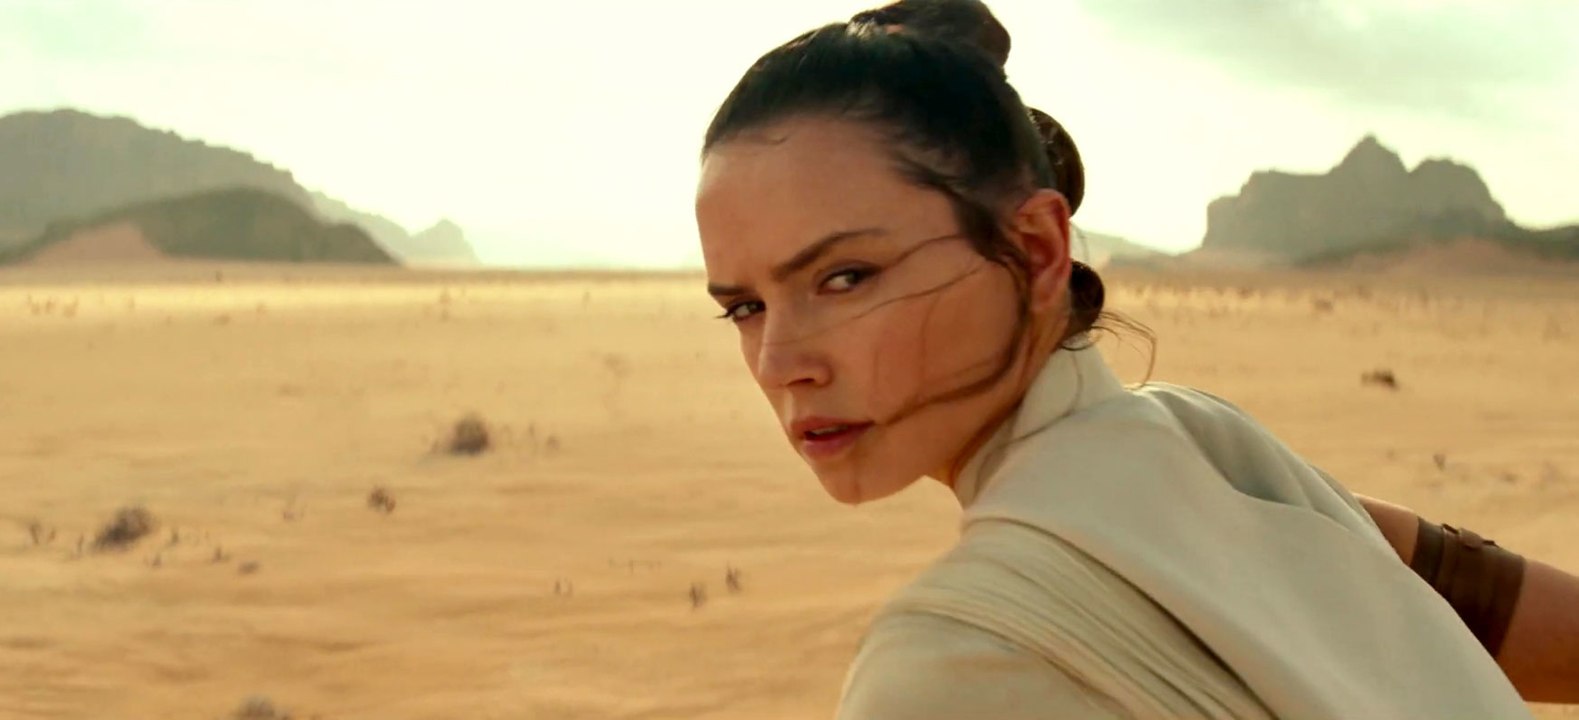 Star Wars Episode 9 - Der Aufstieg Skywalkers: Teaser-Trailer (Deutsch) HD